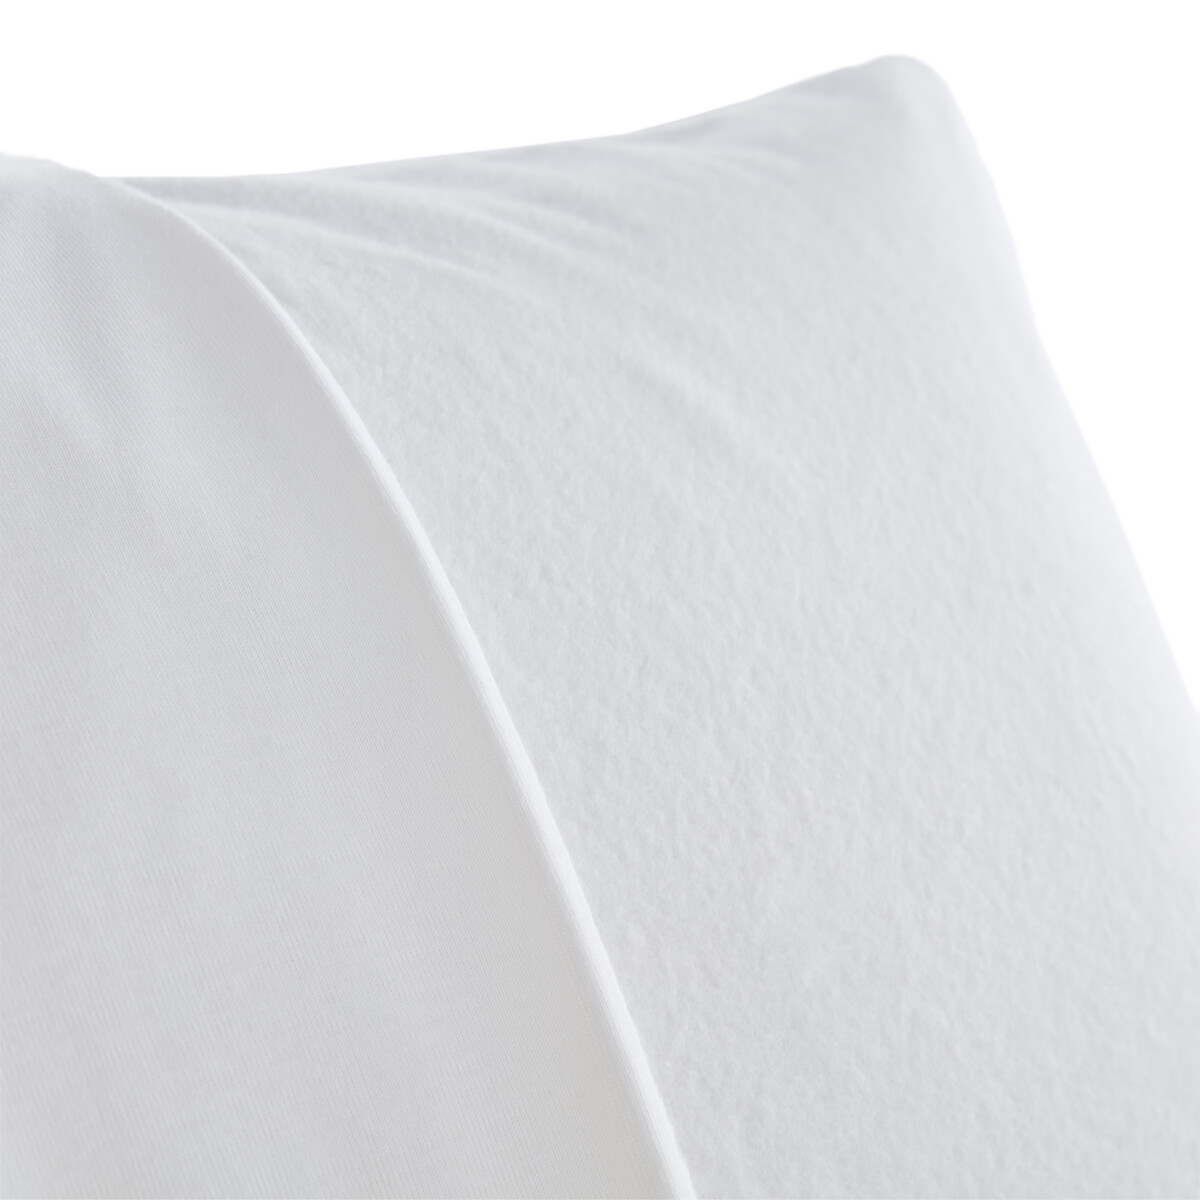 Чехол La Redoute Защитный на подушку из хлопкового мольтона 50 x 70 см белый, размер 50 x 70 см - фото 2